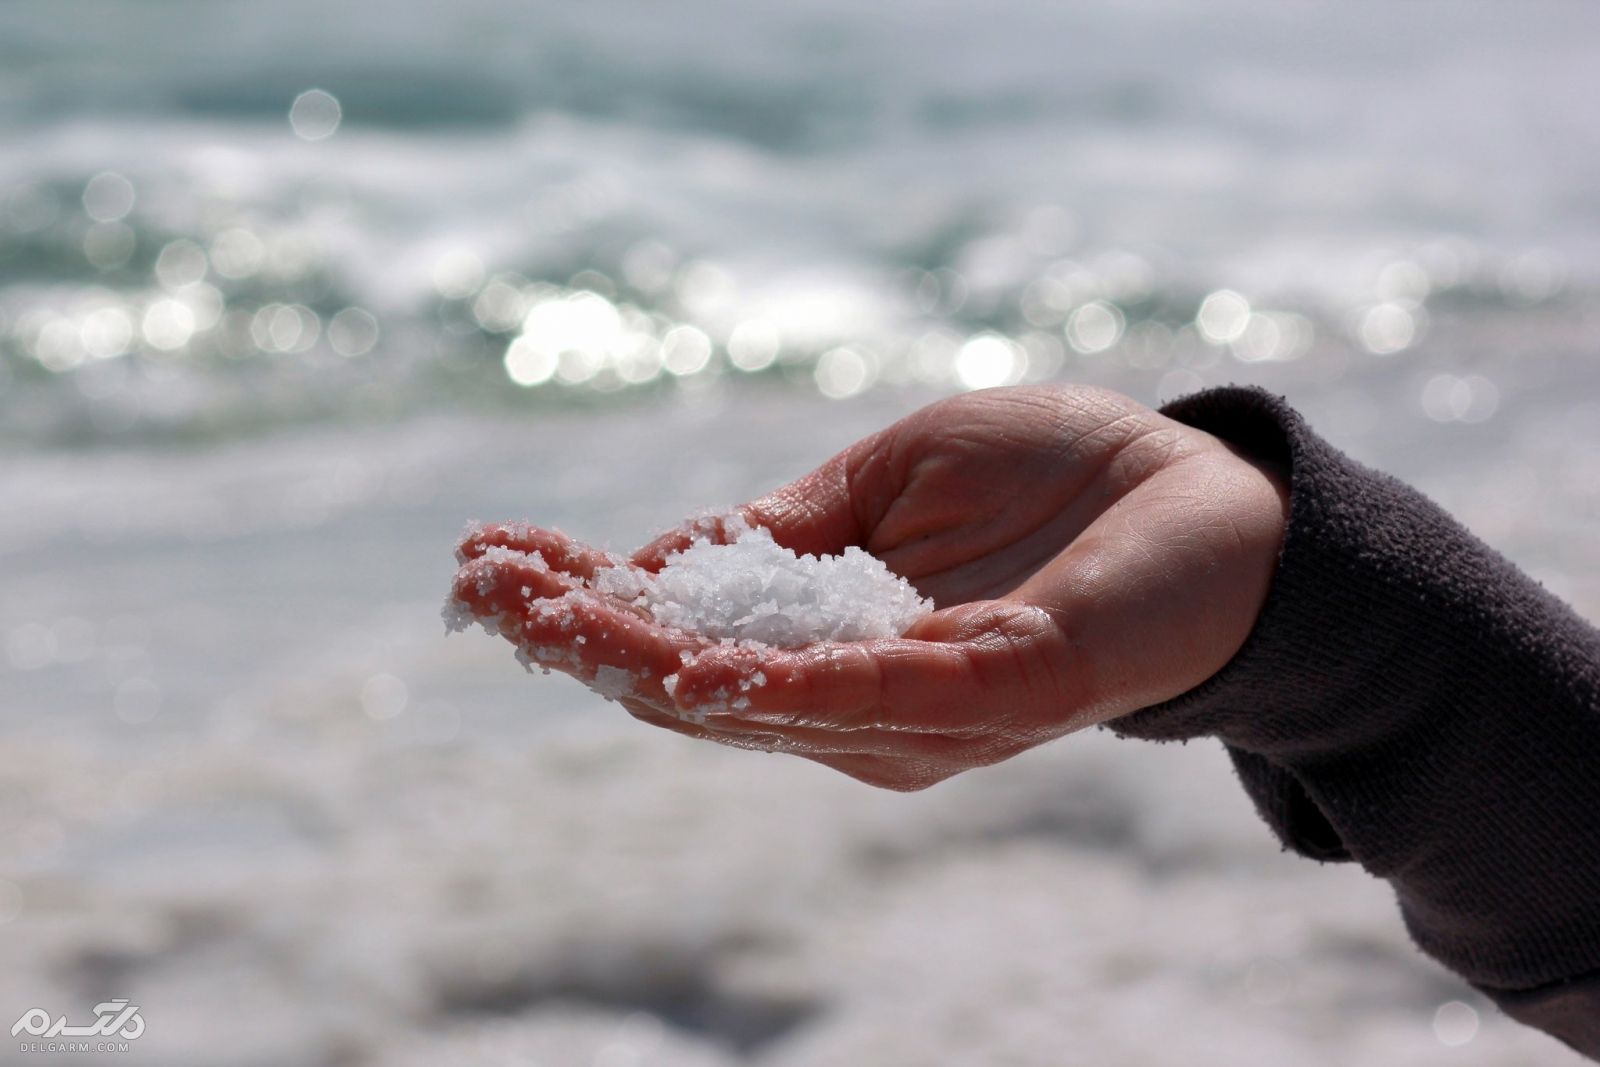 مزایای نمک دریا برای درمان مشکلات پوستی